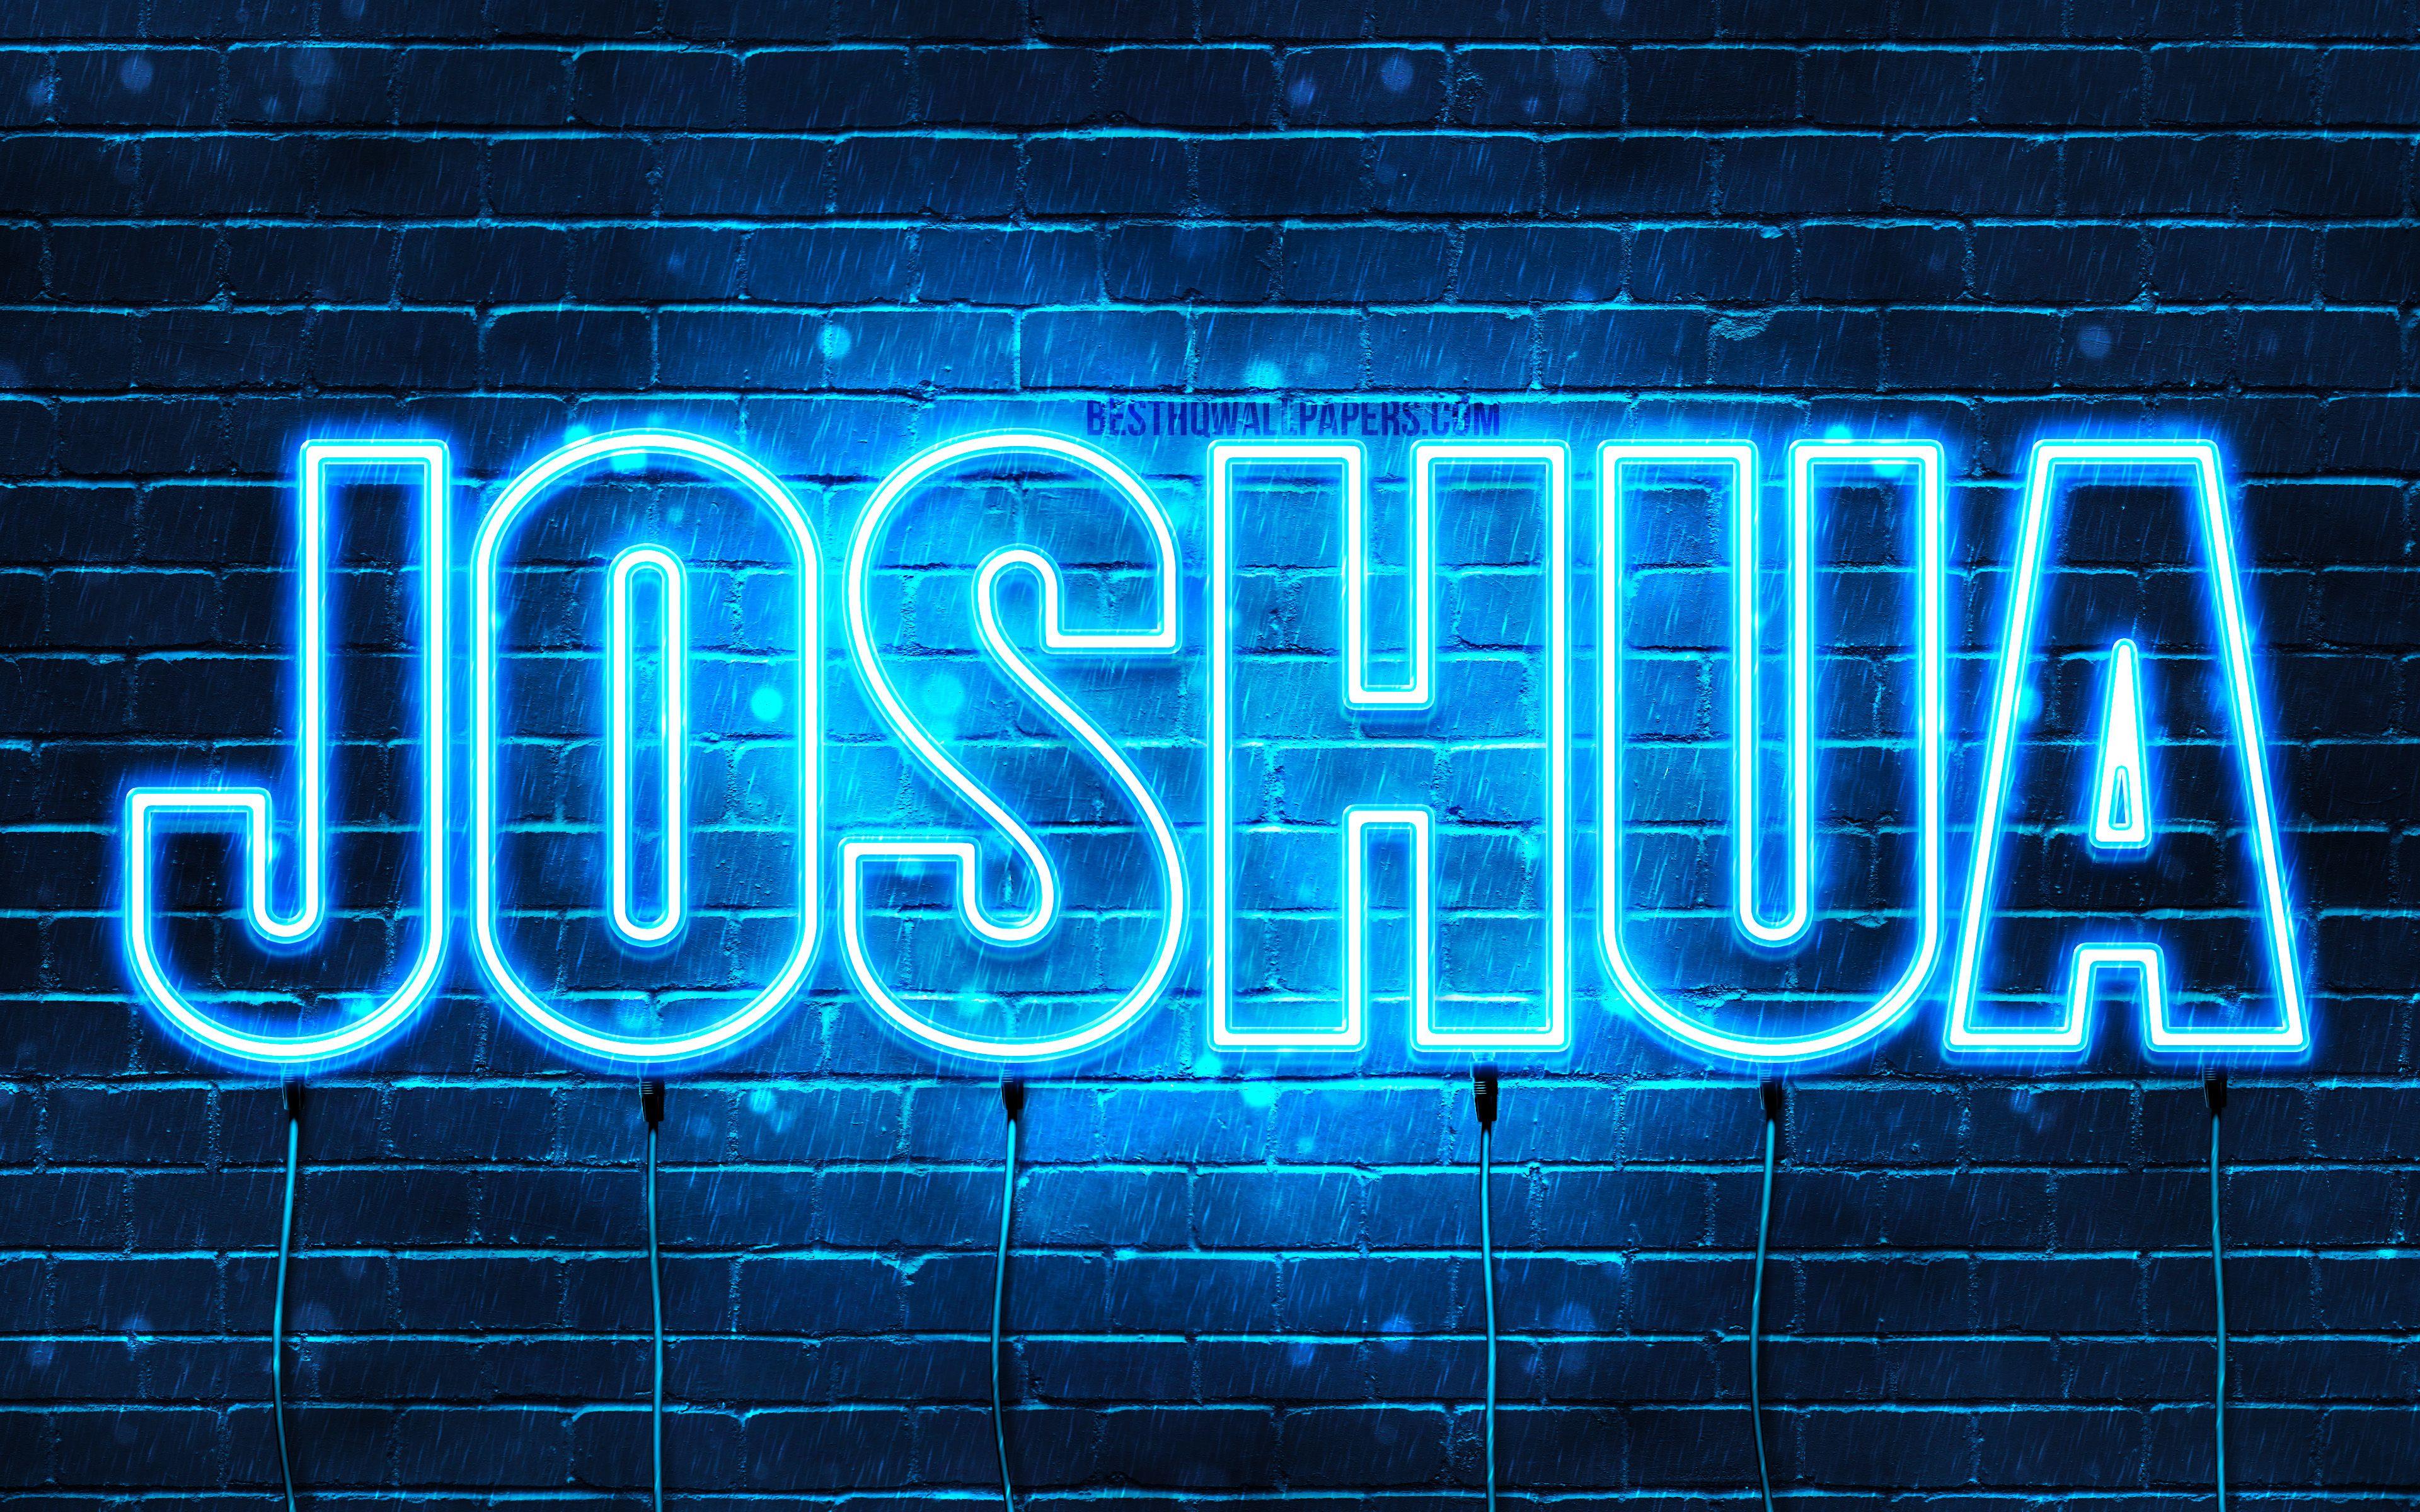 Joshua Name Wallpapers - Top Những Hình Ảnh Đẹp